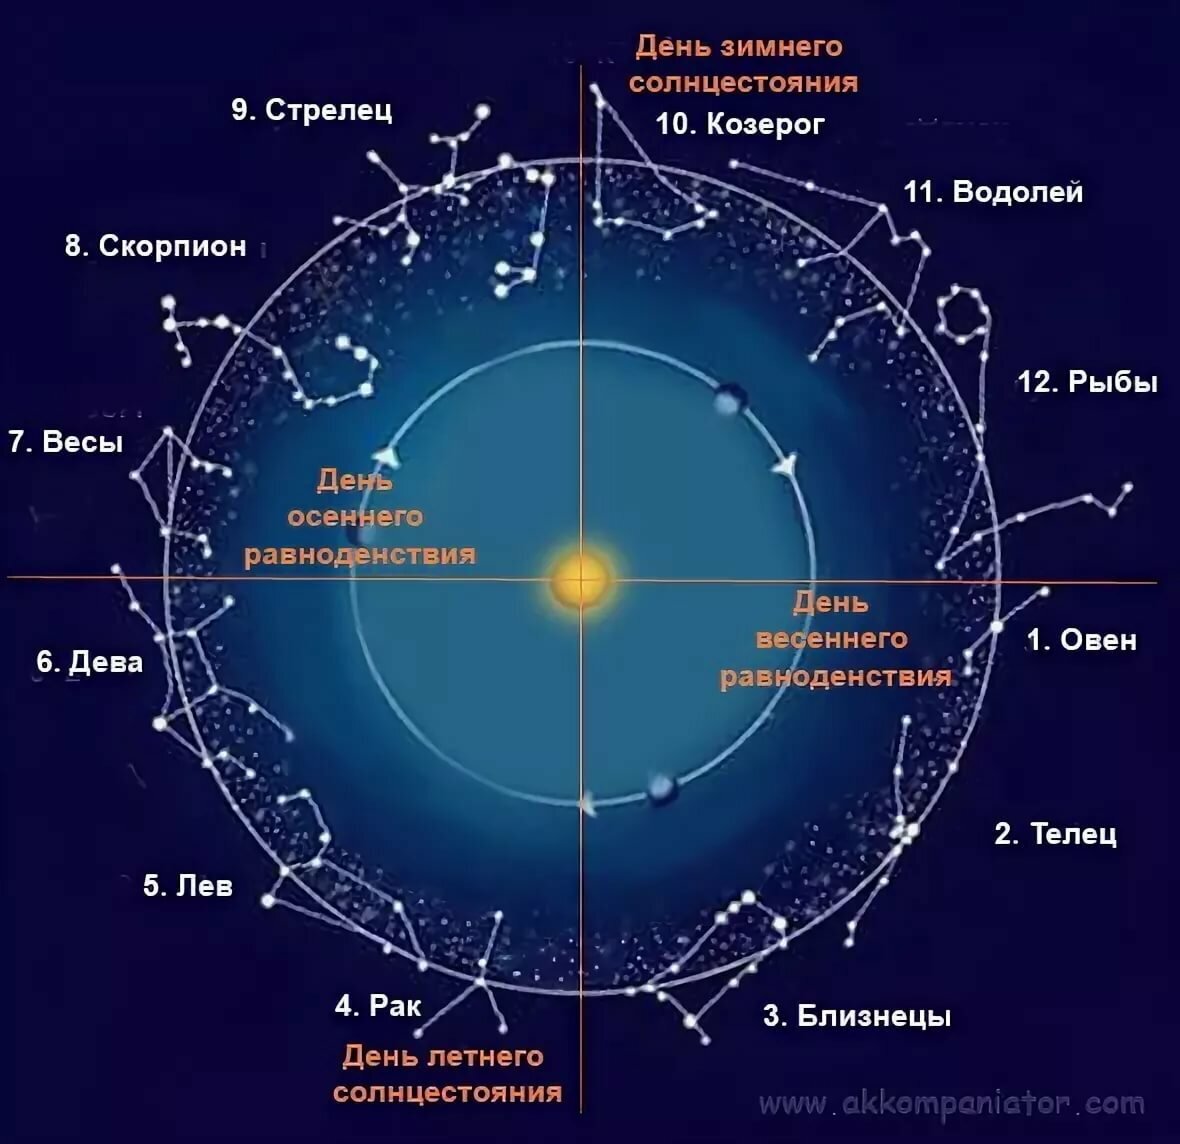 созвездия знаков зодиака картинки на русском языке